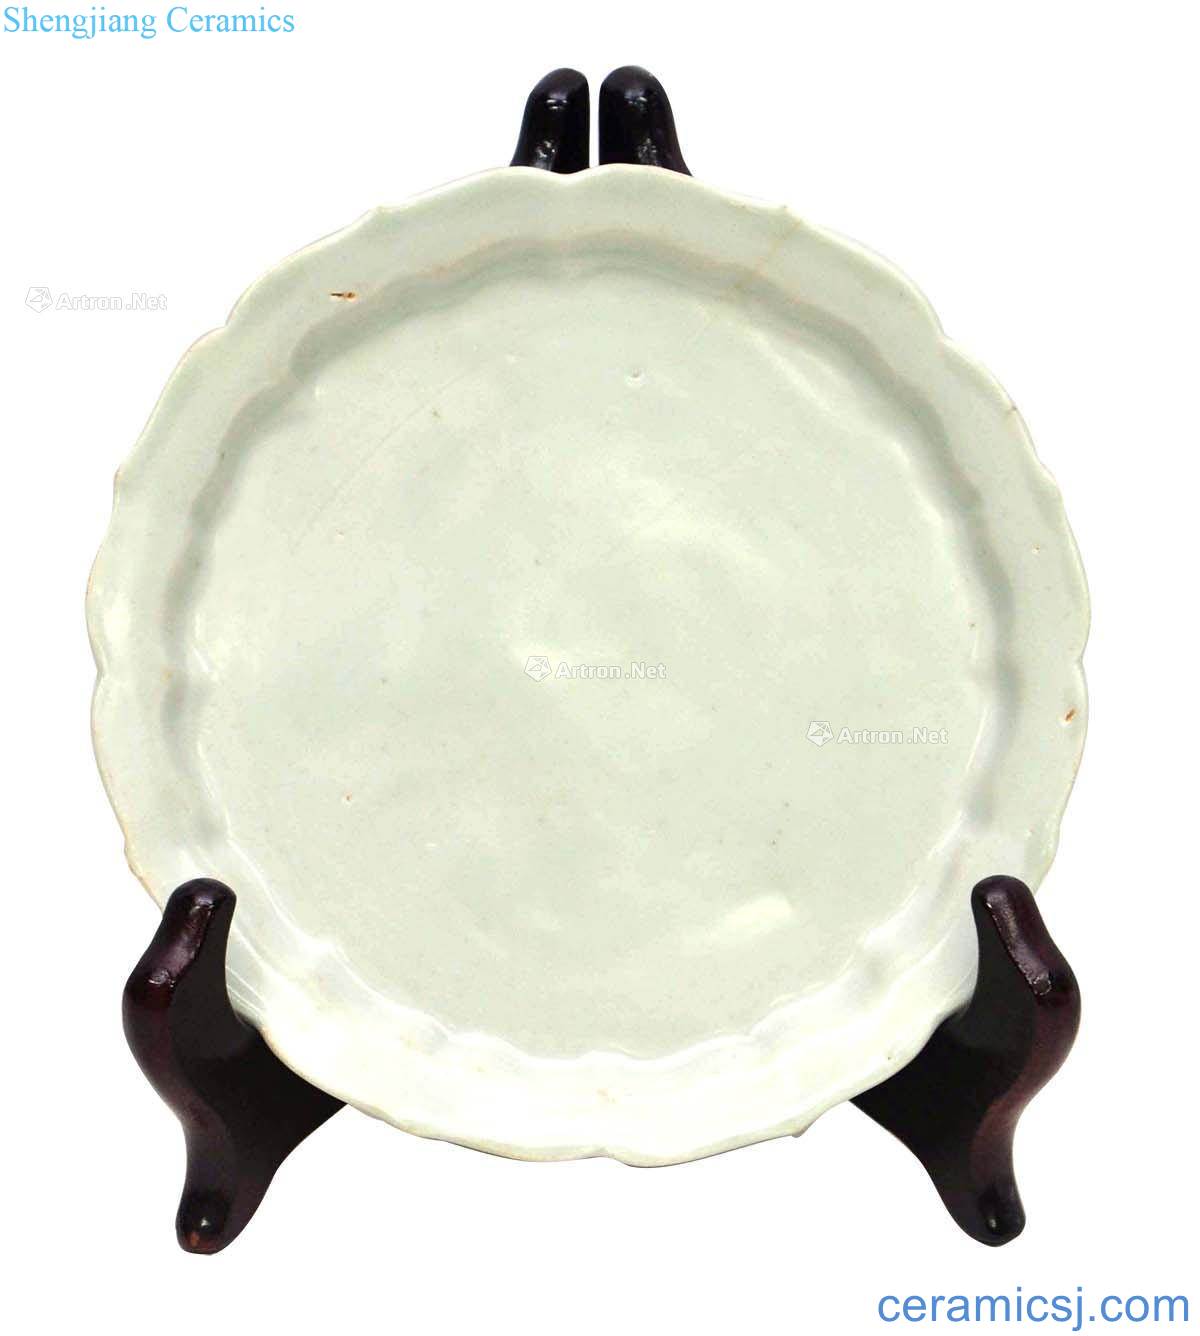 Bright white glazed dish